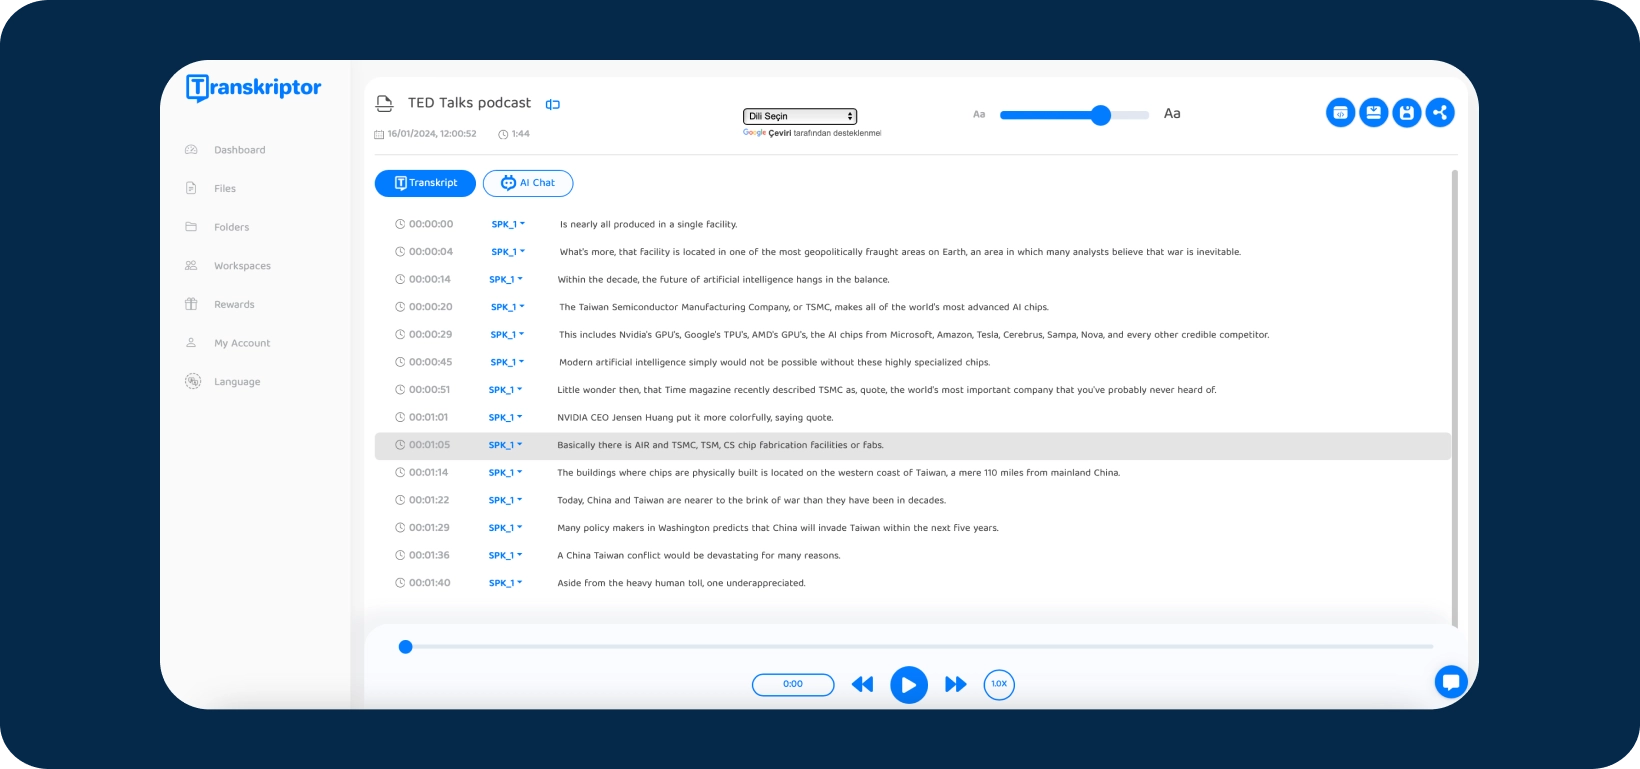 Captura de tela da interface Transkriptor aplicativo mostrando um podcast do TED Talks sendo transcrito.